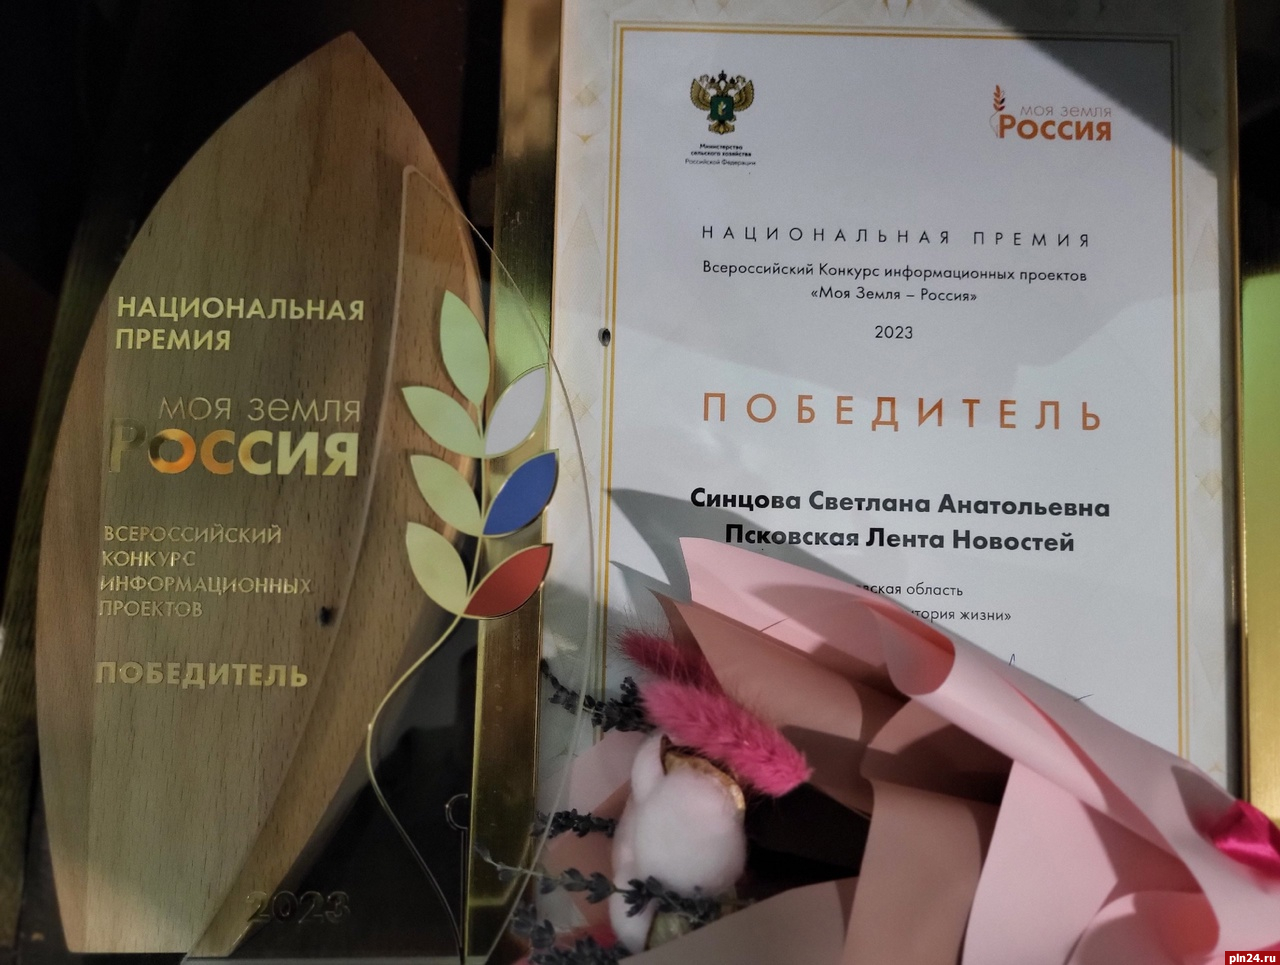 ПЛН вошла в число победителей Национальной премии «Моя Земля - Россия-2023»